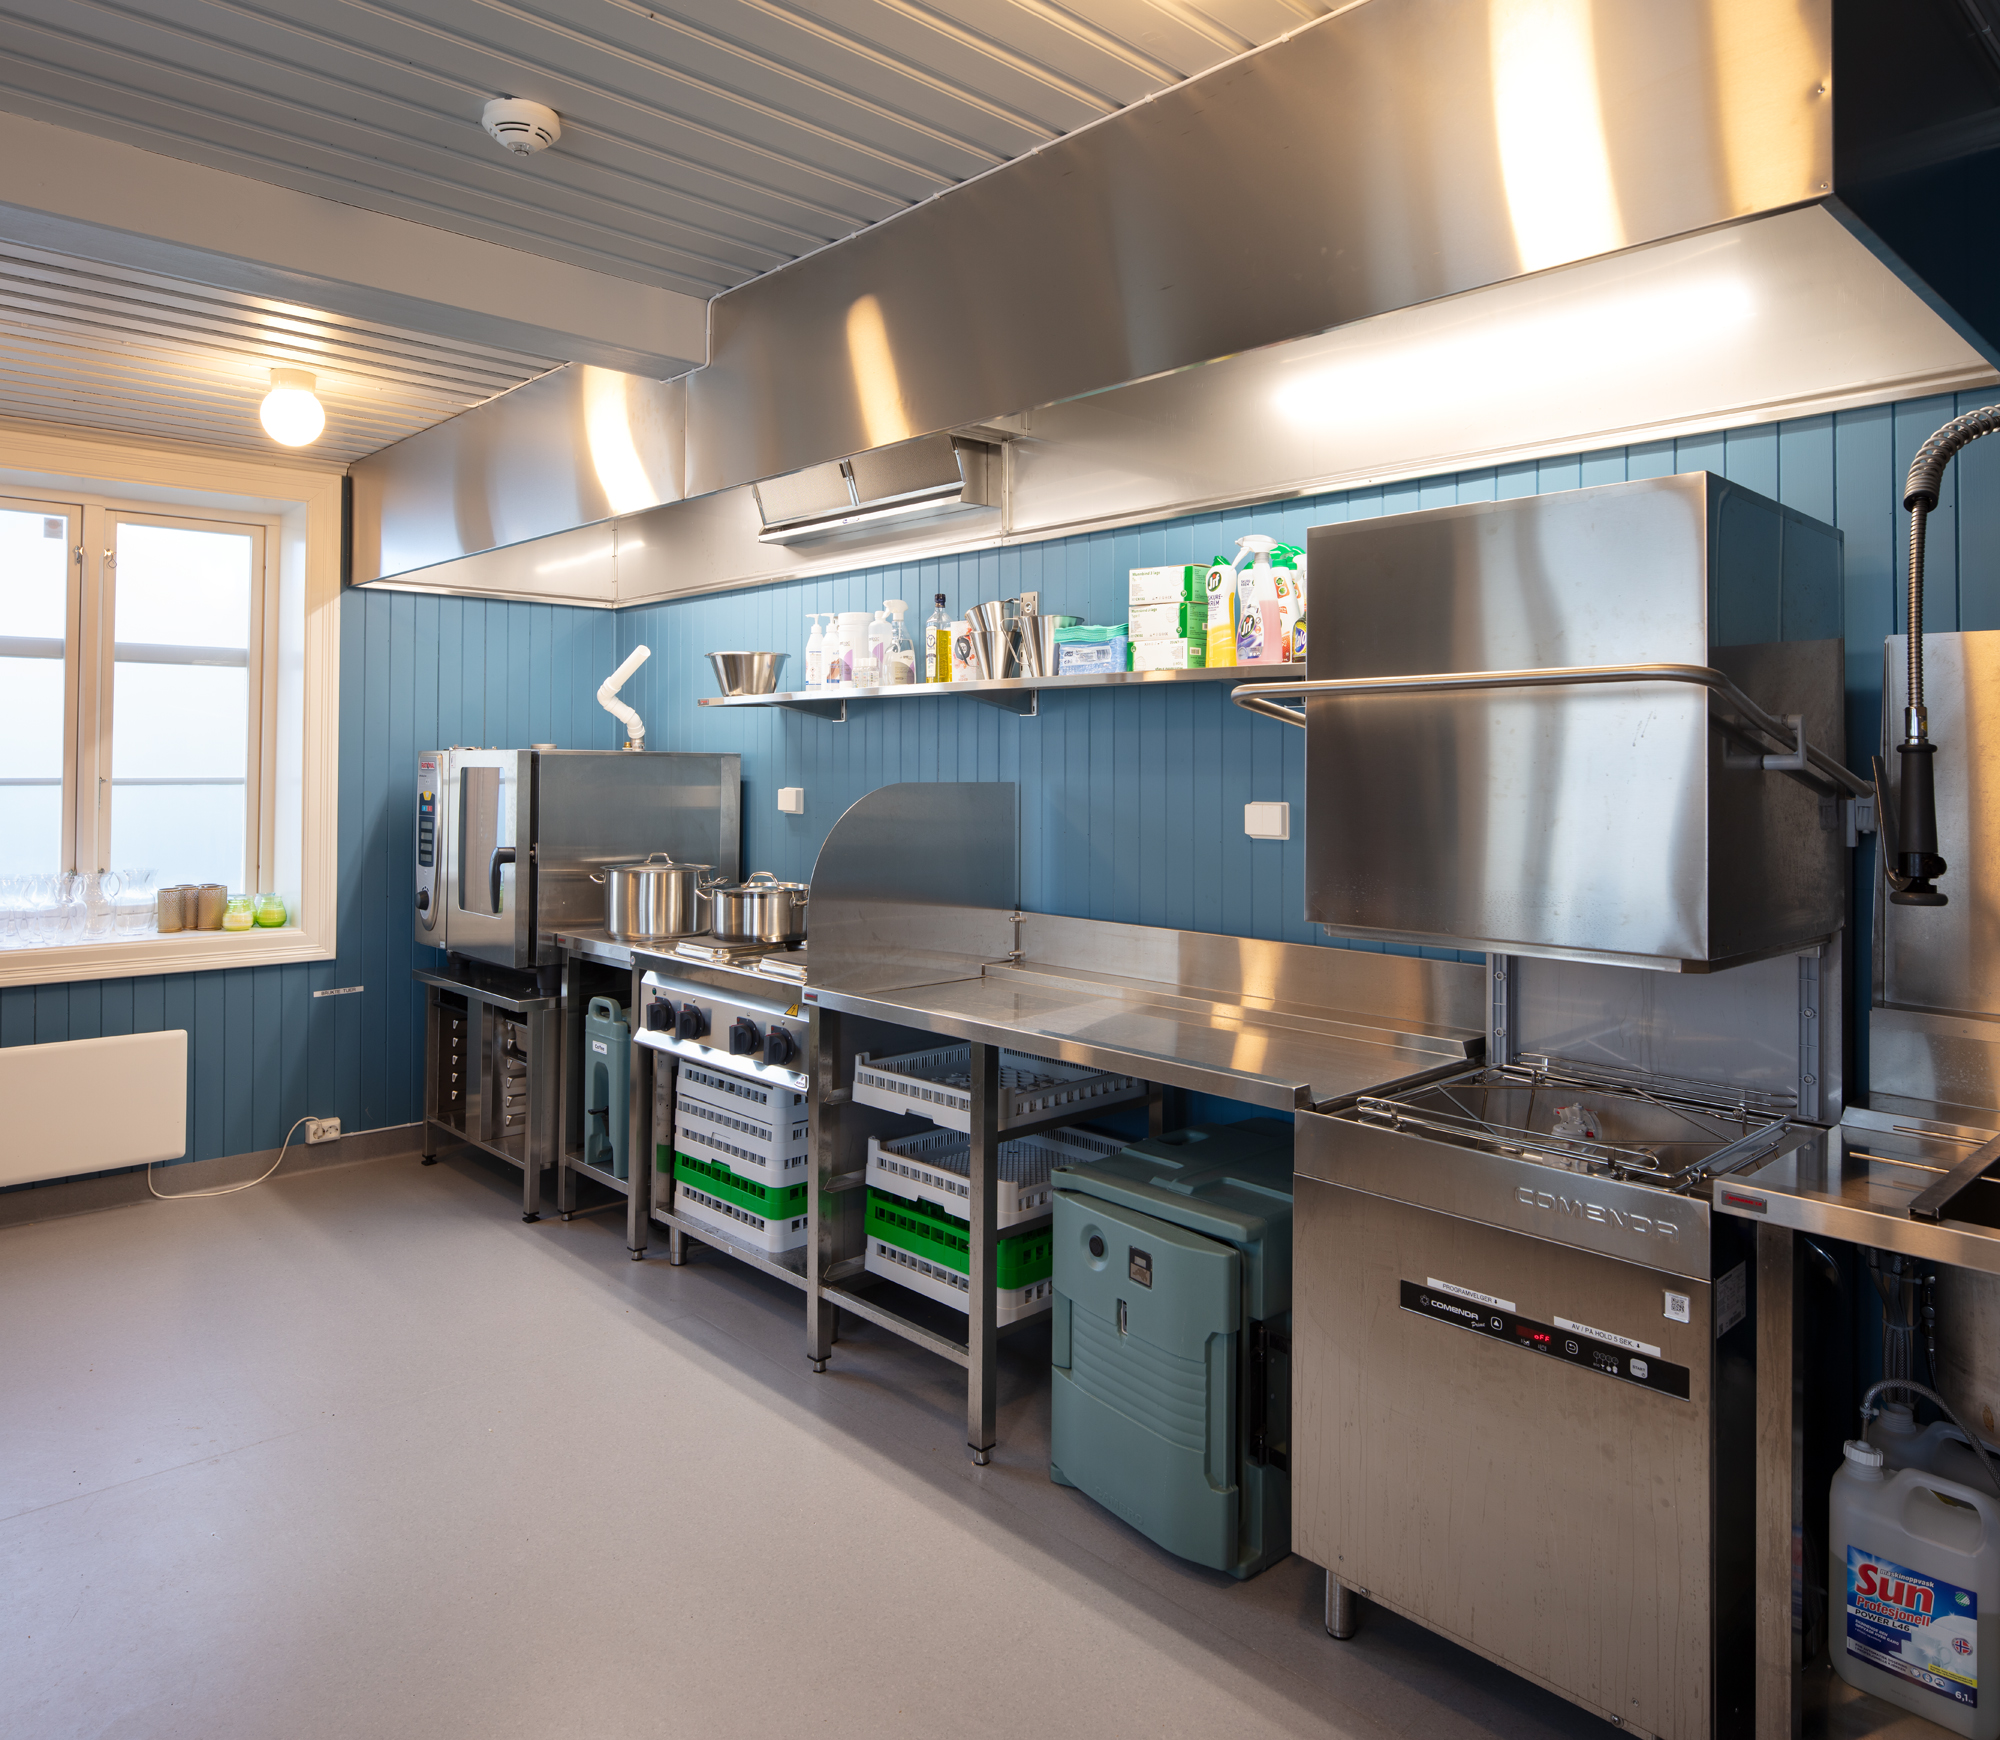 Bildet viser et kjøkken med stålfronter og overflater, med en gammeldags trevegg i mellomblå farge.